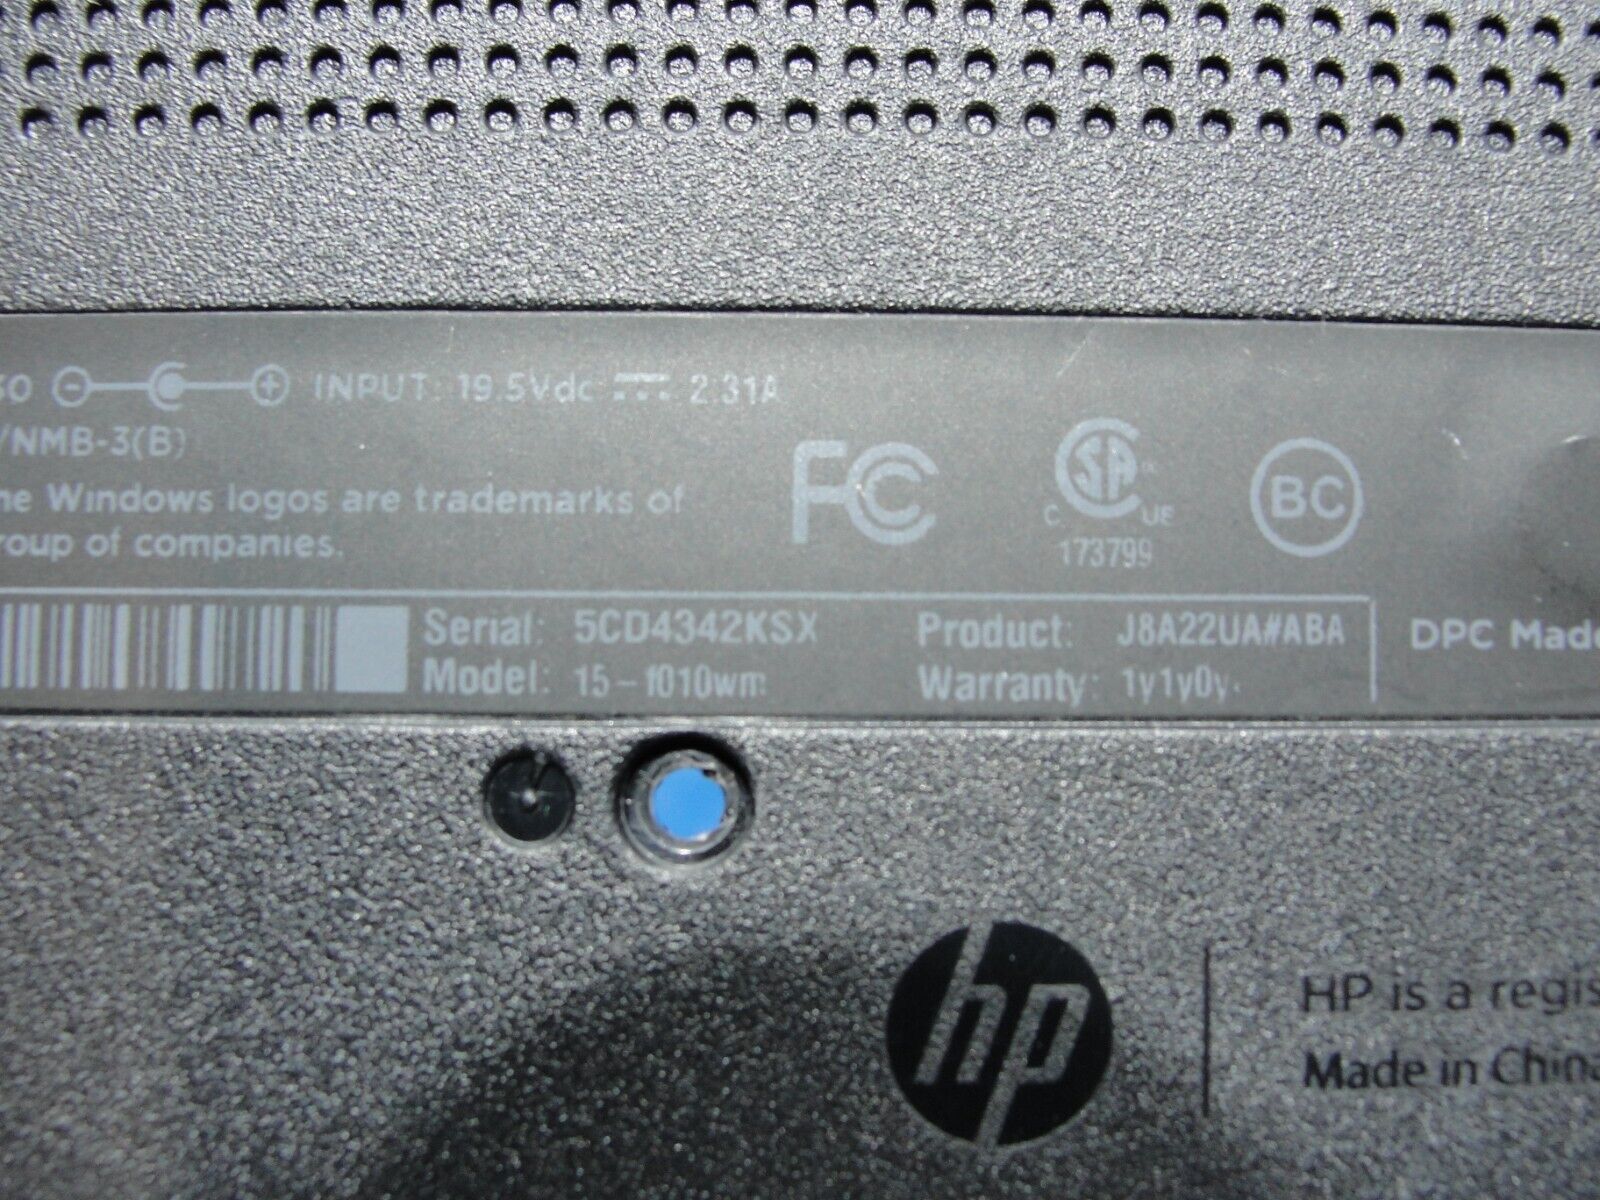 HP 15-f010wm 15.6